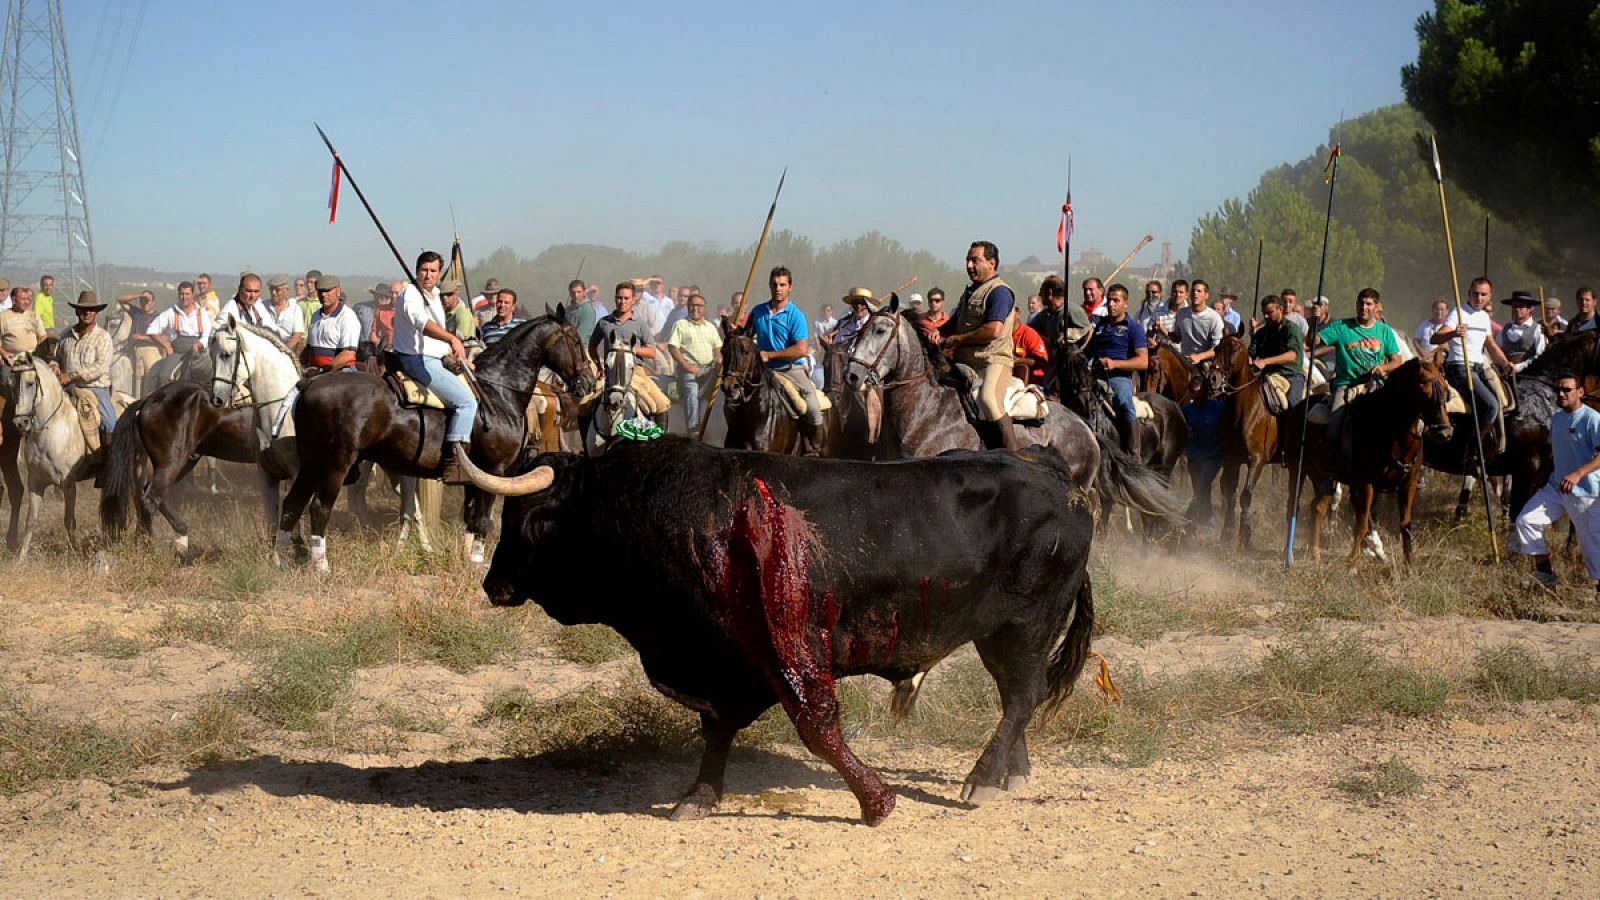 Fotografía facilitada por el Partido Animalista Contra el maltrato Animal (PACMA) de la fiesta del Toro de la Vega en Tordesillas.